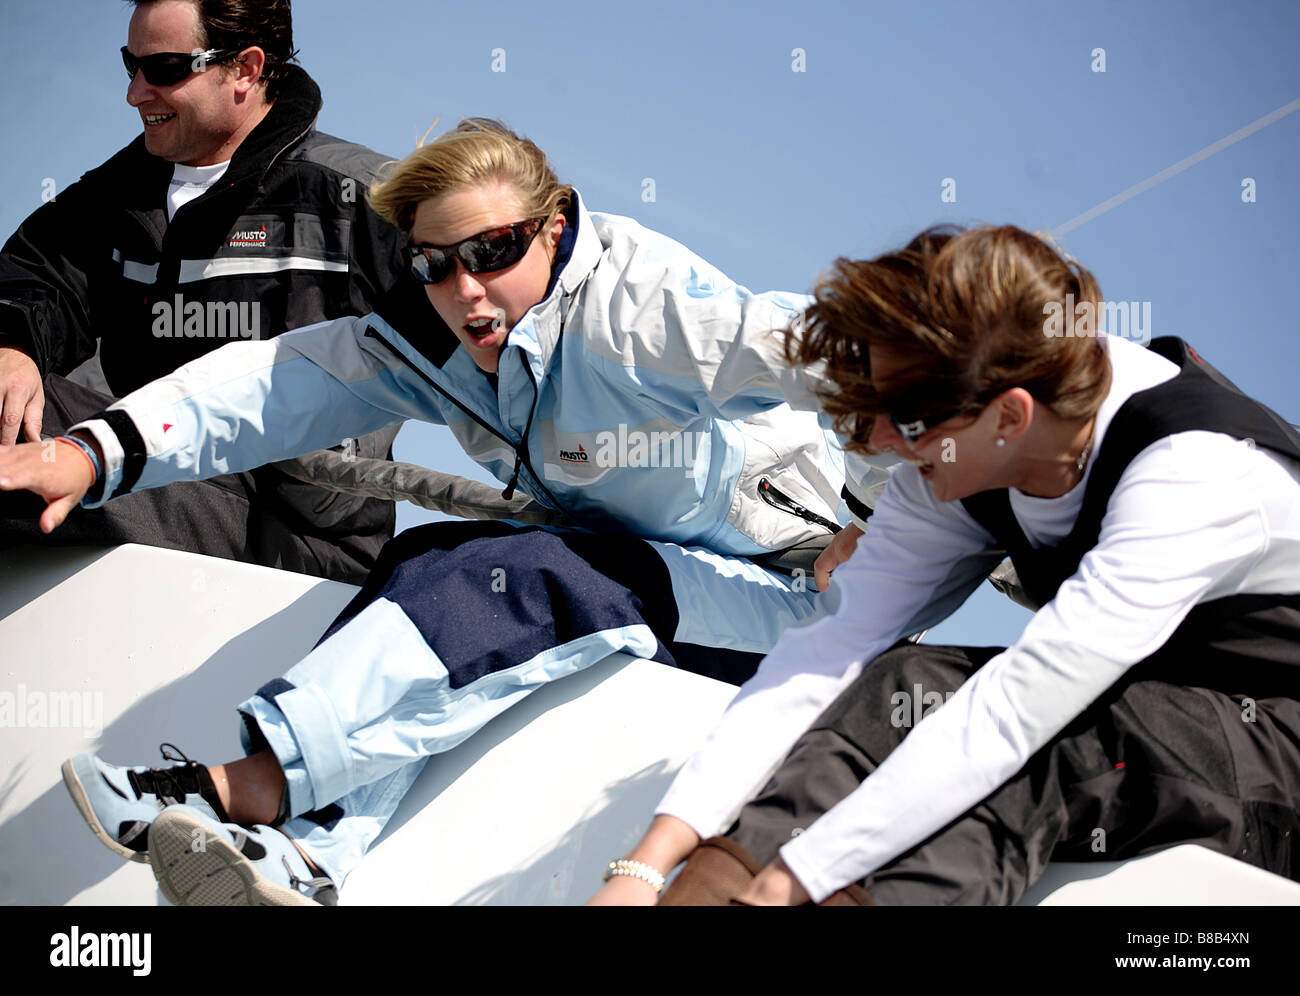 3 Erwachsene, 2 Frau und 1 Mann beugte sich über den Rand einer Yacht während des Rennens. Das Bild ist Farbe in ein Querformat. Stockfoto